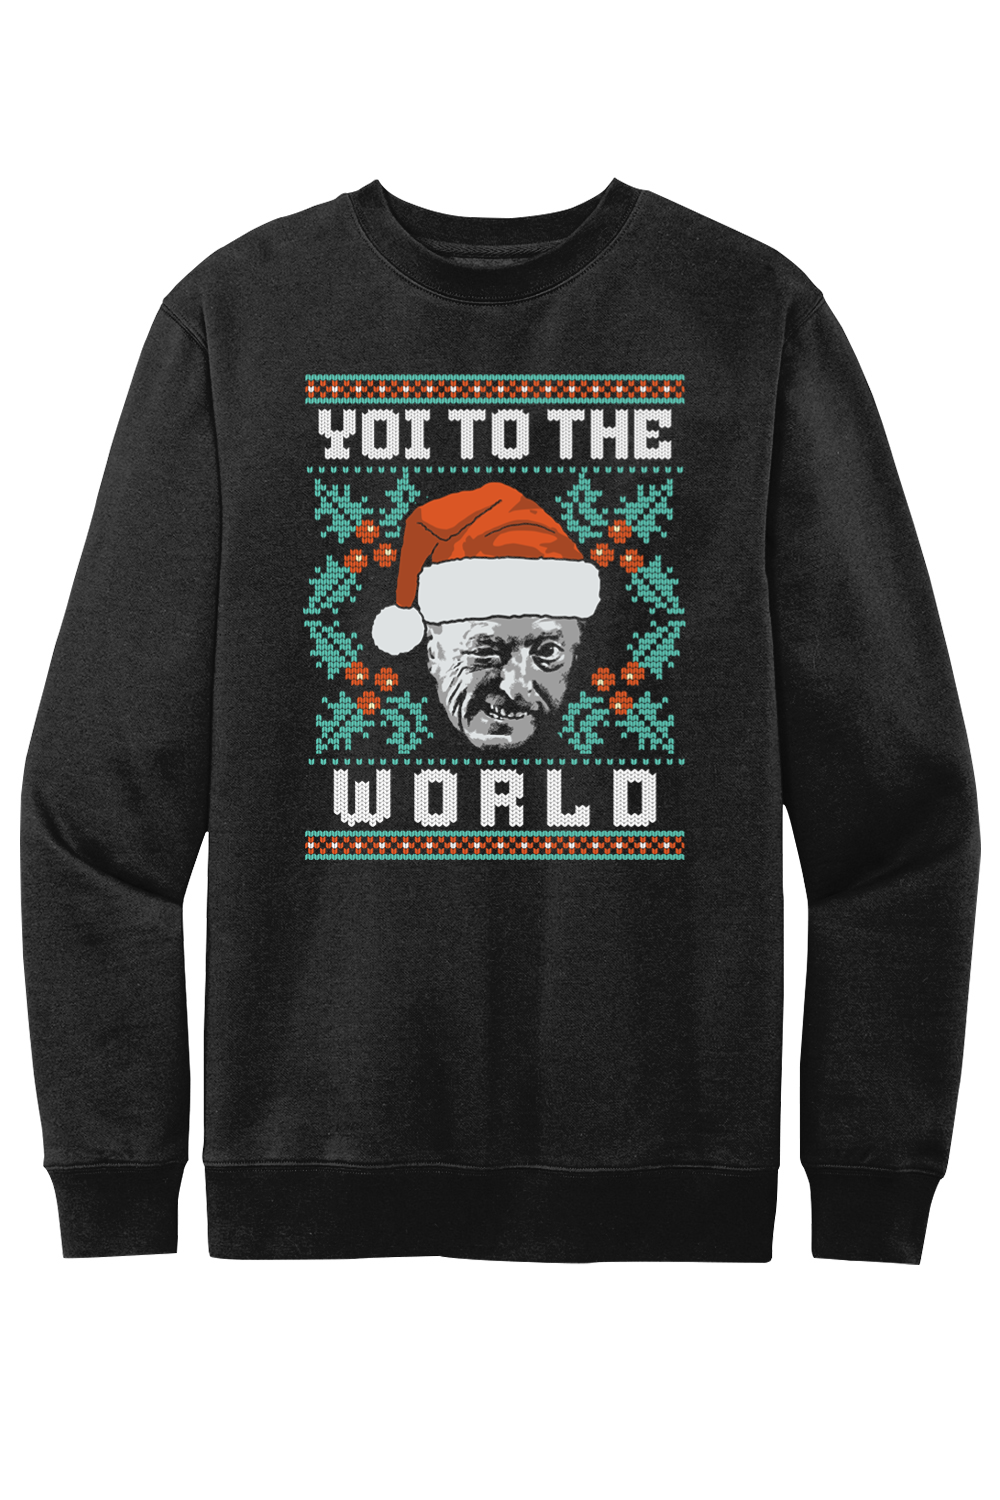 Yoi to the World - Ugly Christmas Sweater - Fleece Crewneck Sweatshirt - Yinzylvania